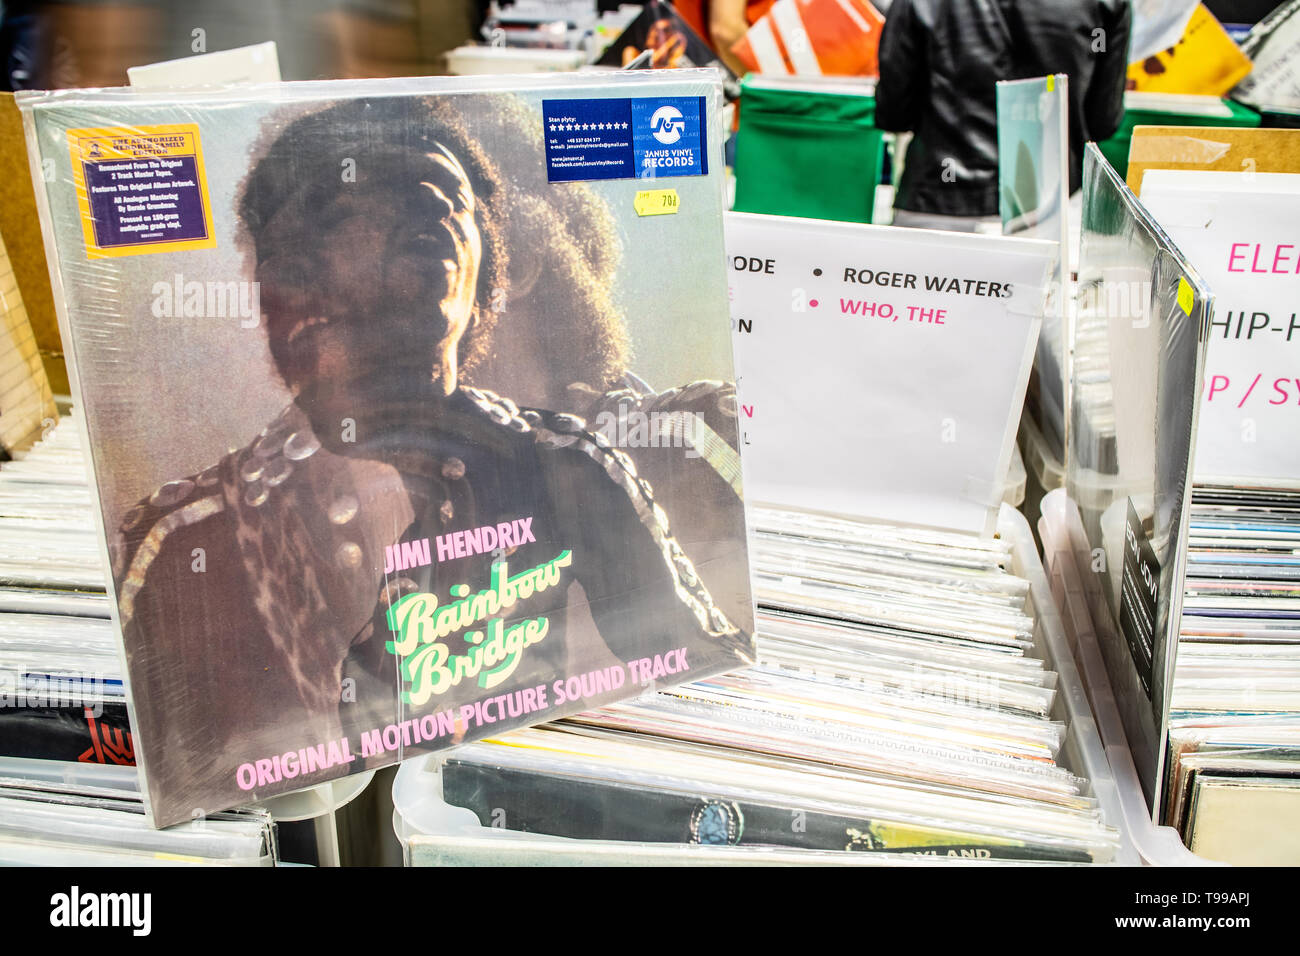 Corato, Polen, 11. Mai 2019: James Marshall "Jimi Hendrix" Vinyl Album auf Display für Verkauf, Vinyl, LP, Album, Pop Rock, Sammlung von Vinyl in zurück Stockfoto